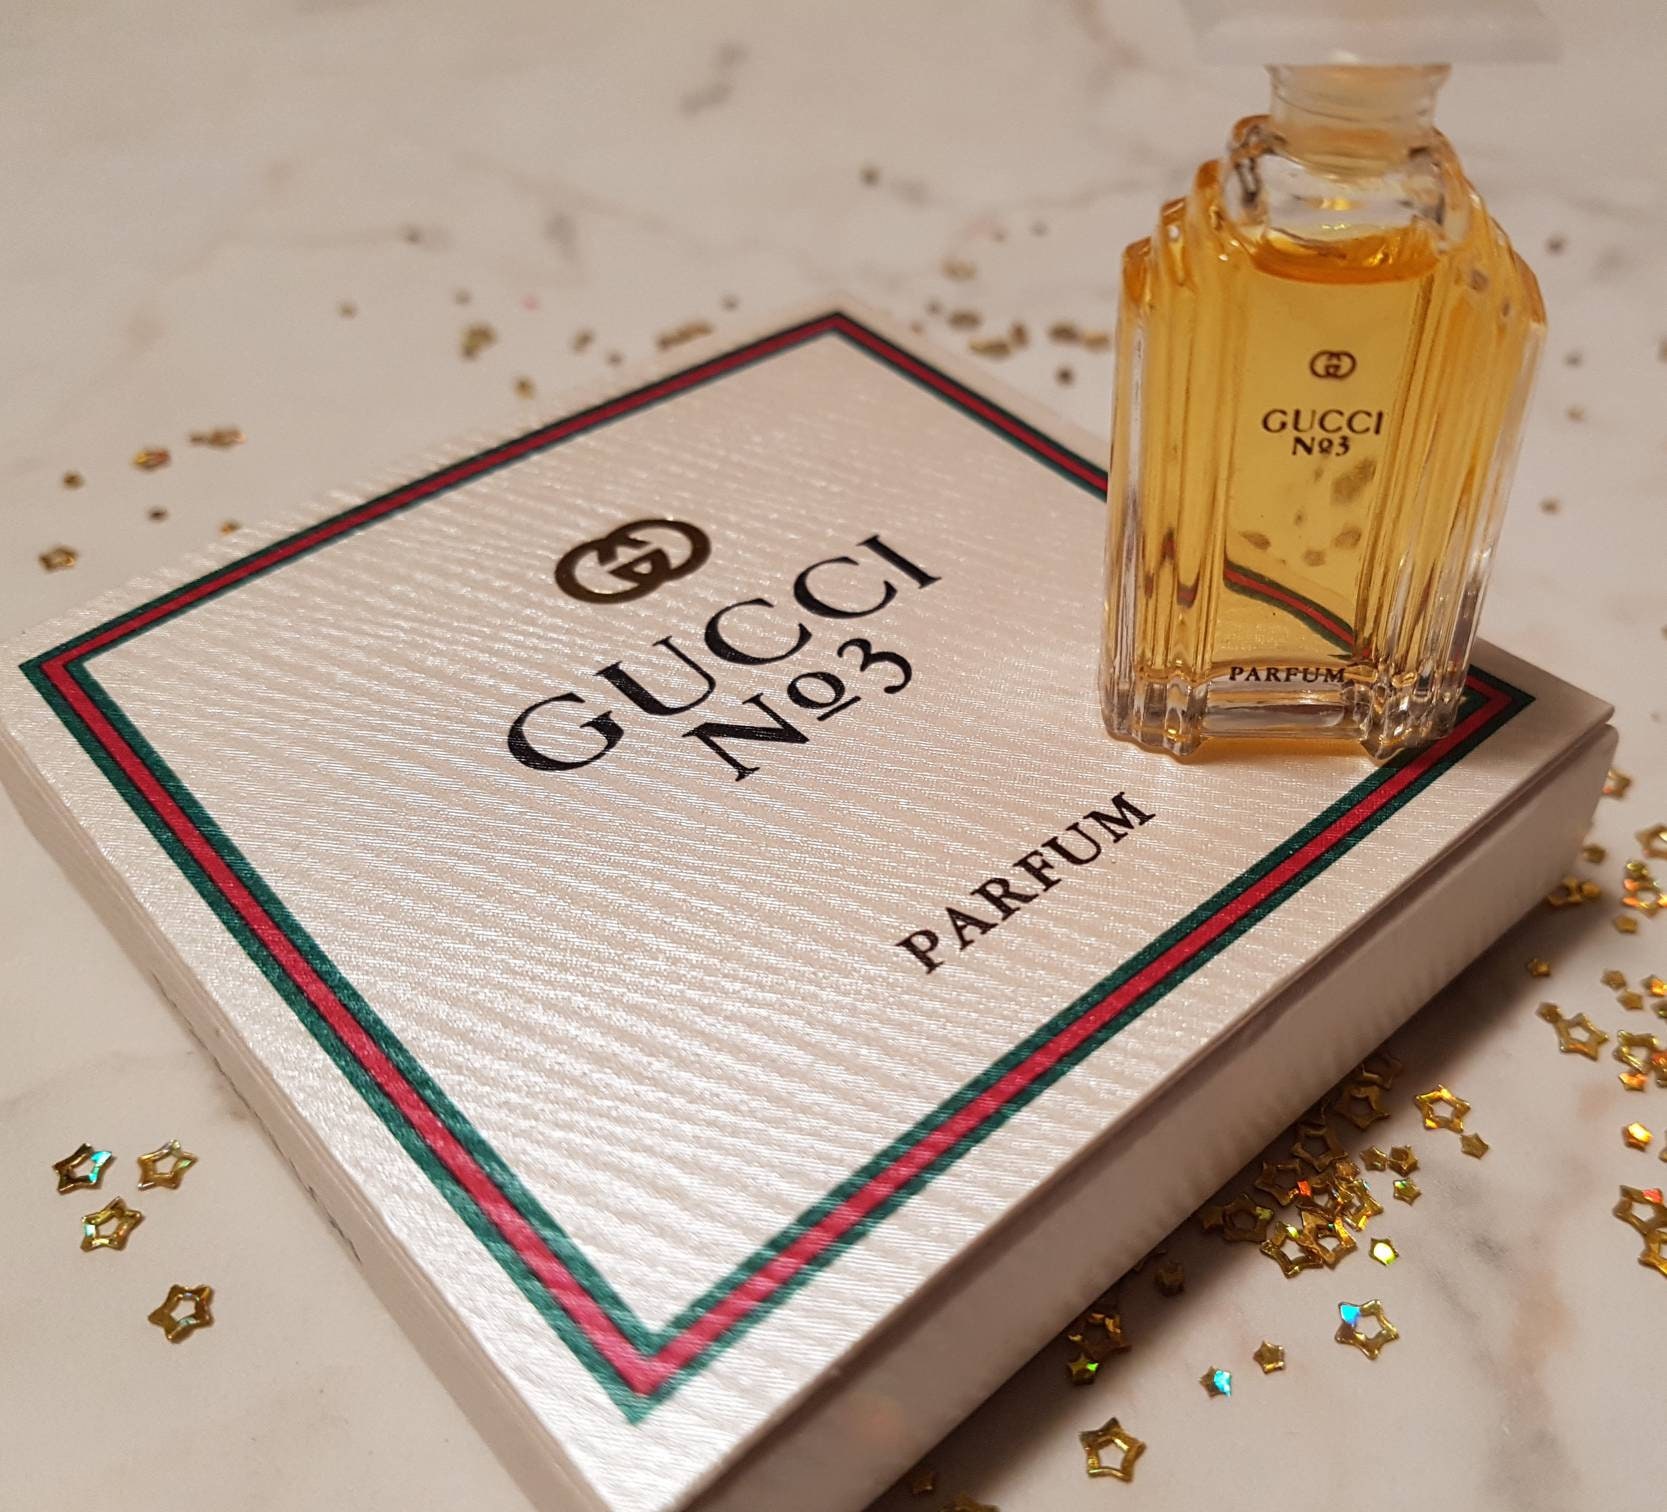 Miniature of Perfume mini Perfume Gucci  Parfum 35 Ml - Etsy UK